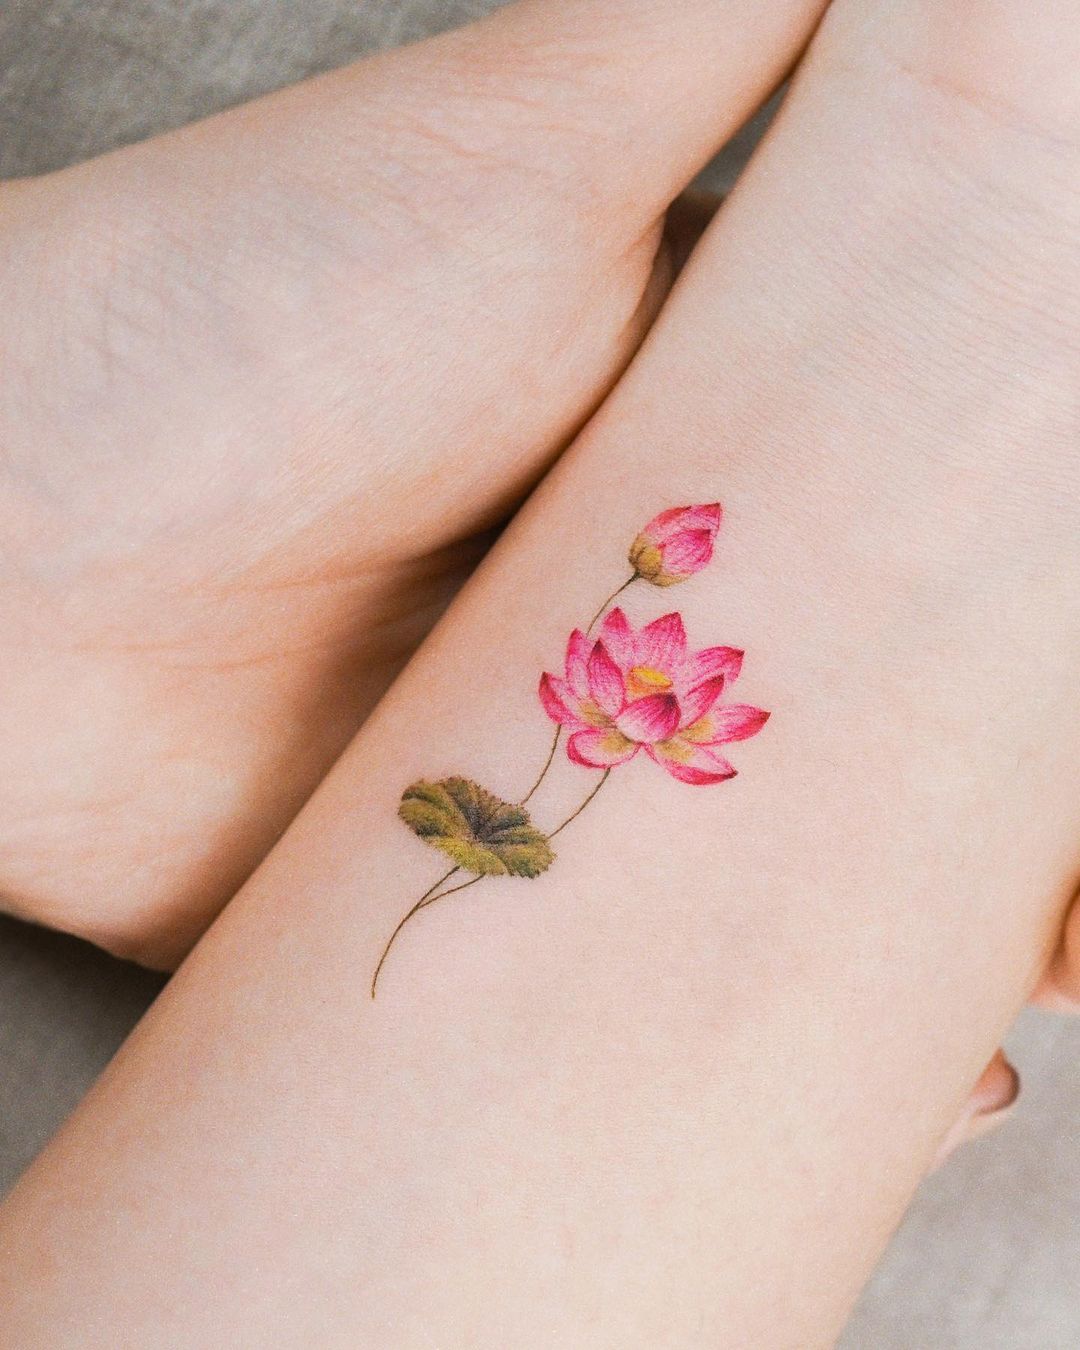 Daffodil Tattoo on Arm - Best Tattoo Ideas Gallery